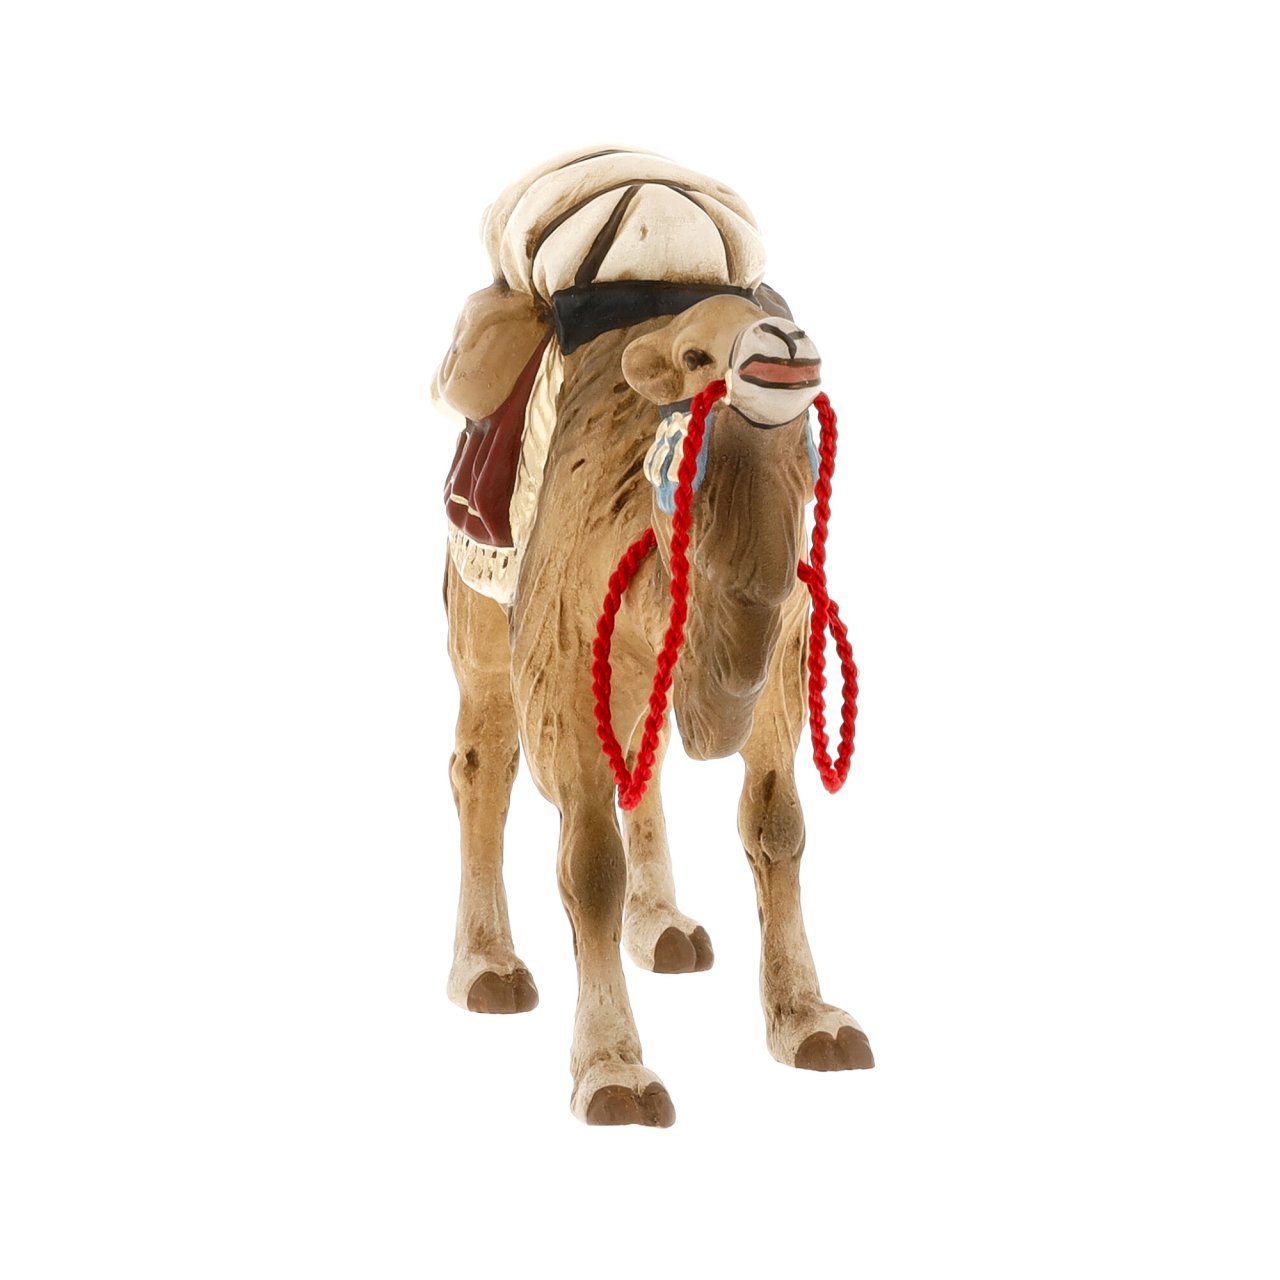 Standing Camel, 9-10cm scale Figurine by Marolin Manufaktur